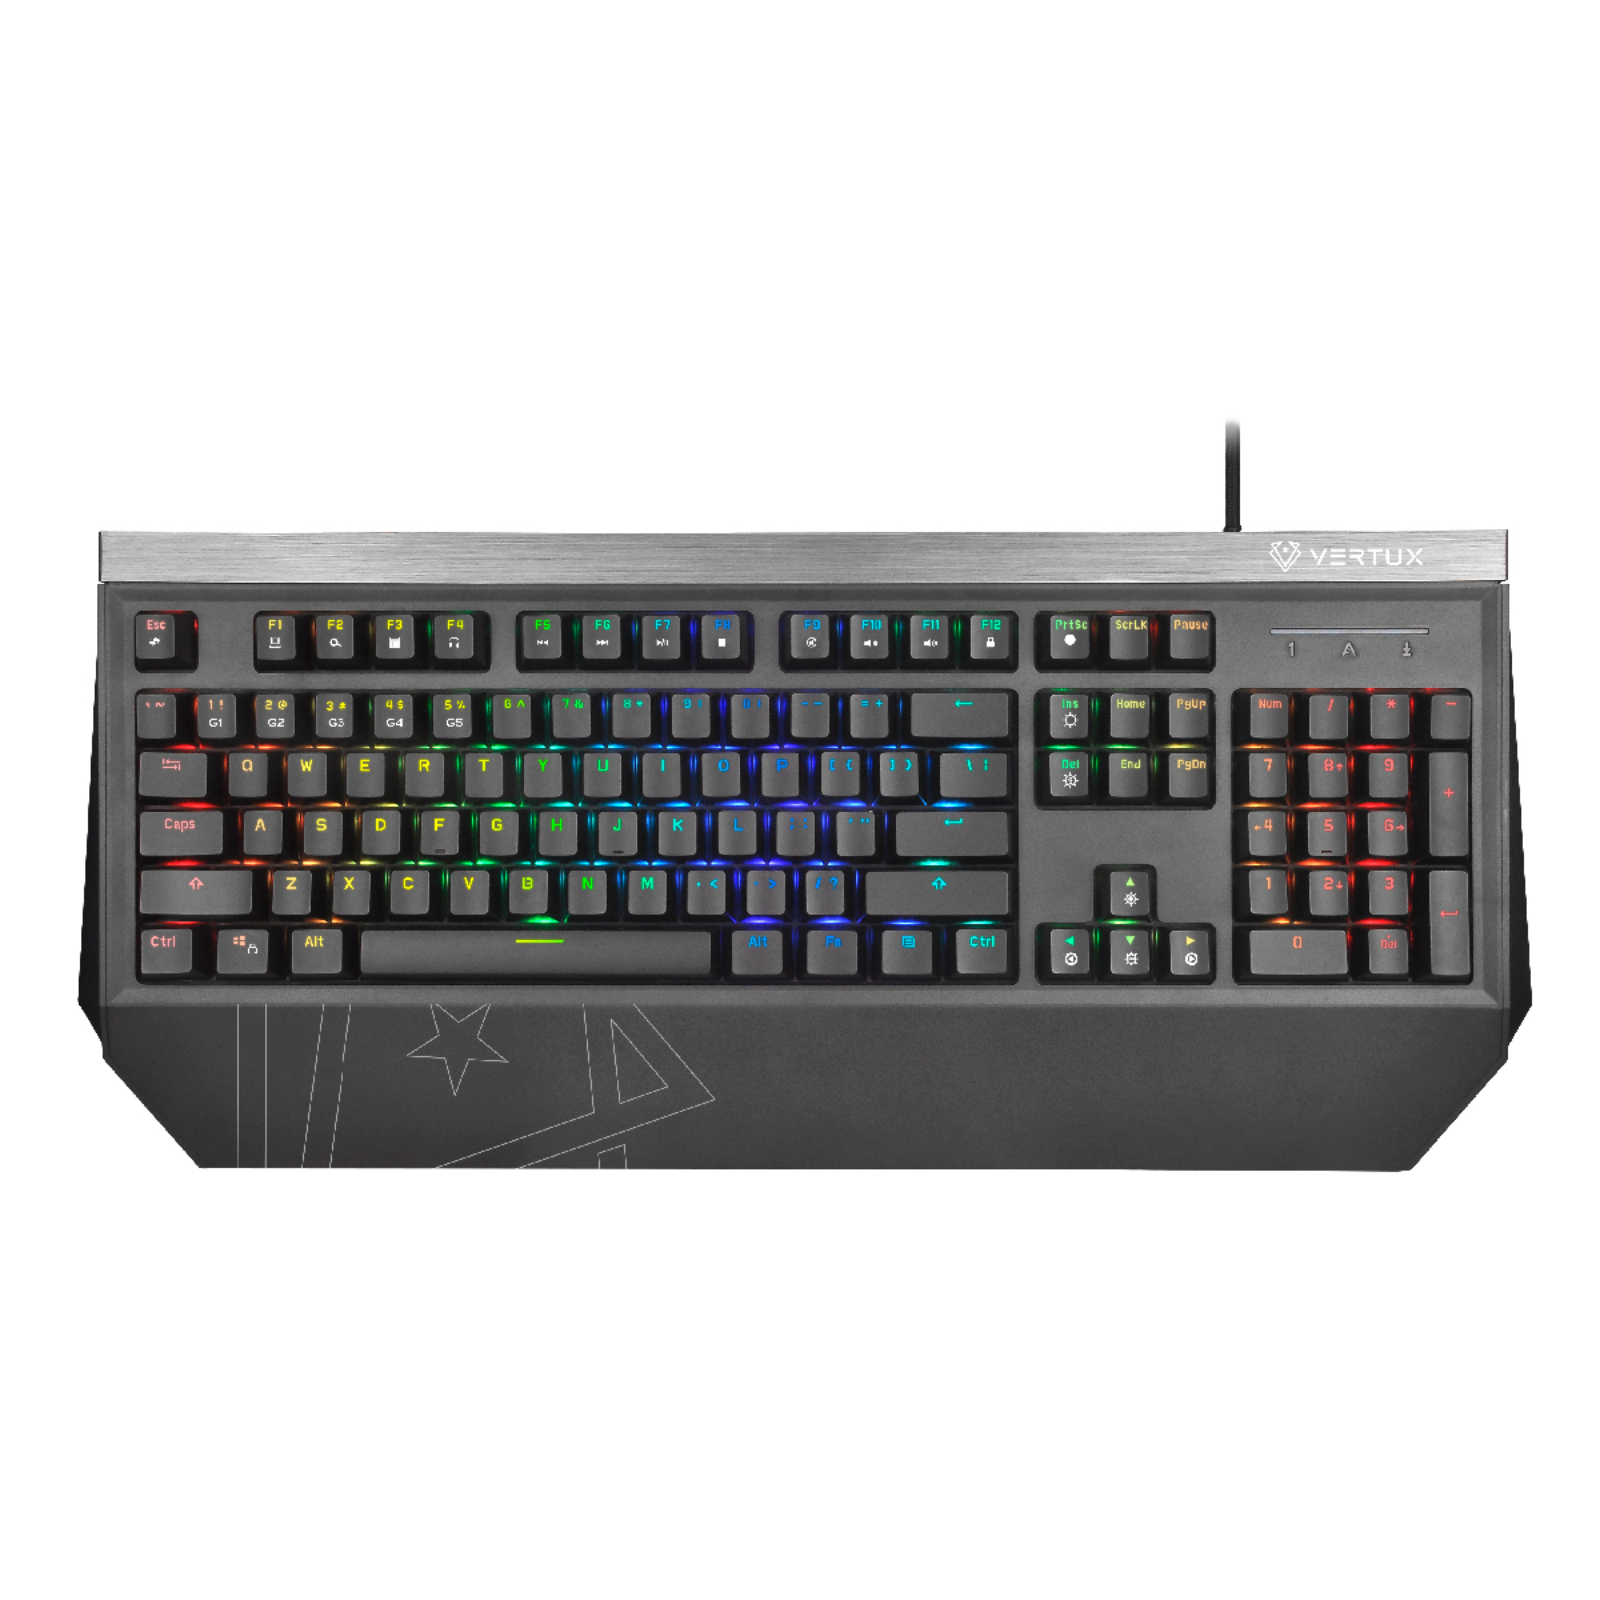 Vertux Tantalum Keyboard